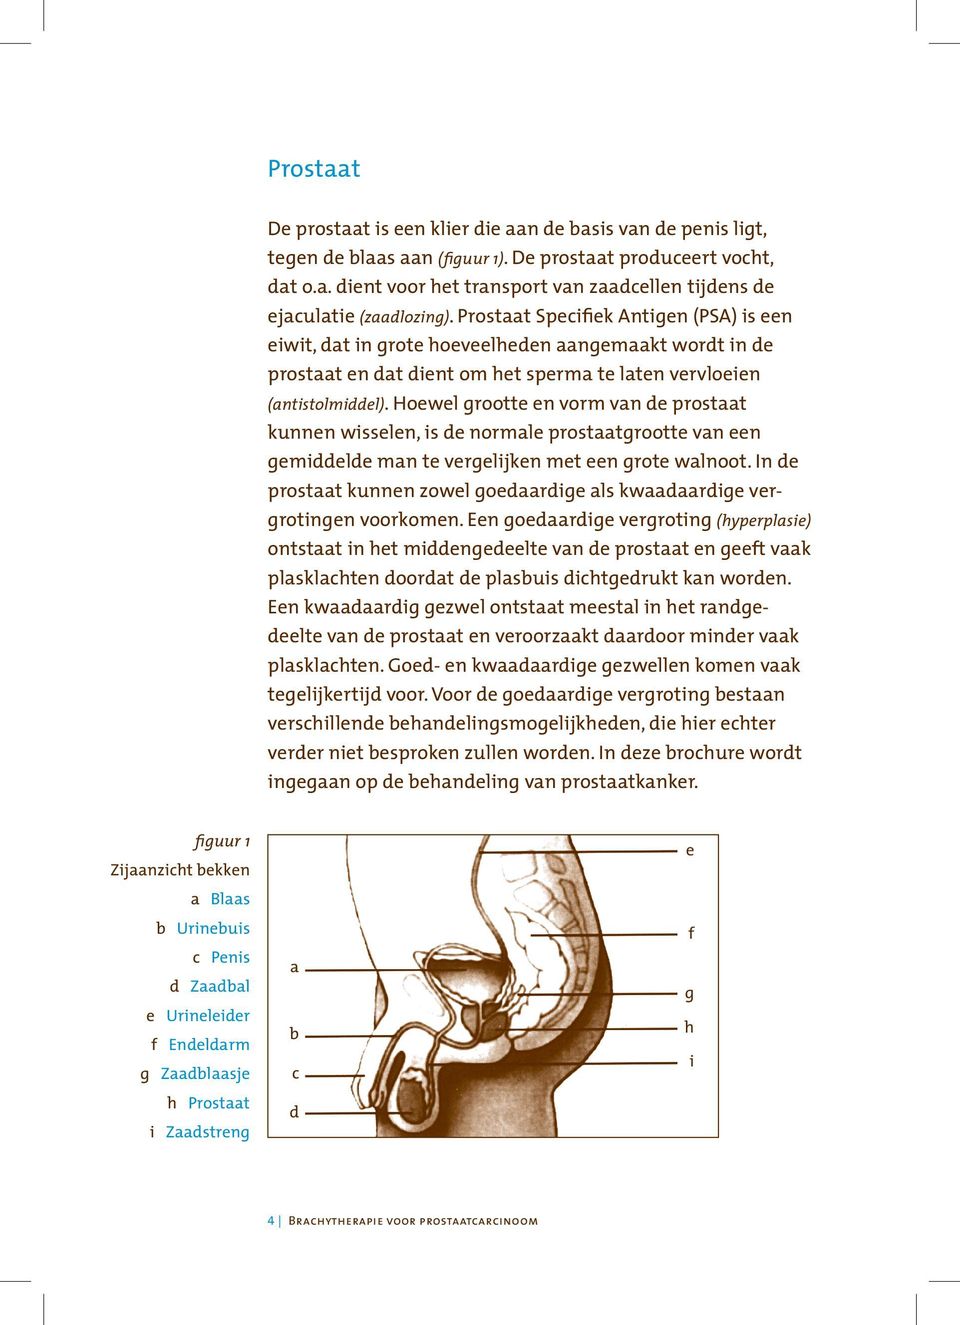 Hoewel grootte en vorm van de prostaat kunnen wisselen, is de normale prostaatgrootte van een gemiddelde man te vergelijken met een grote walnoot.